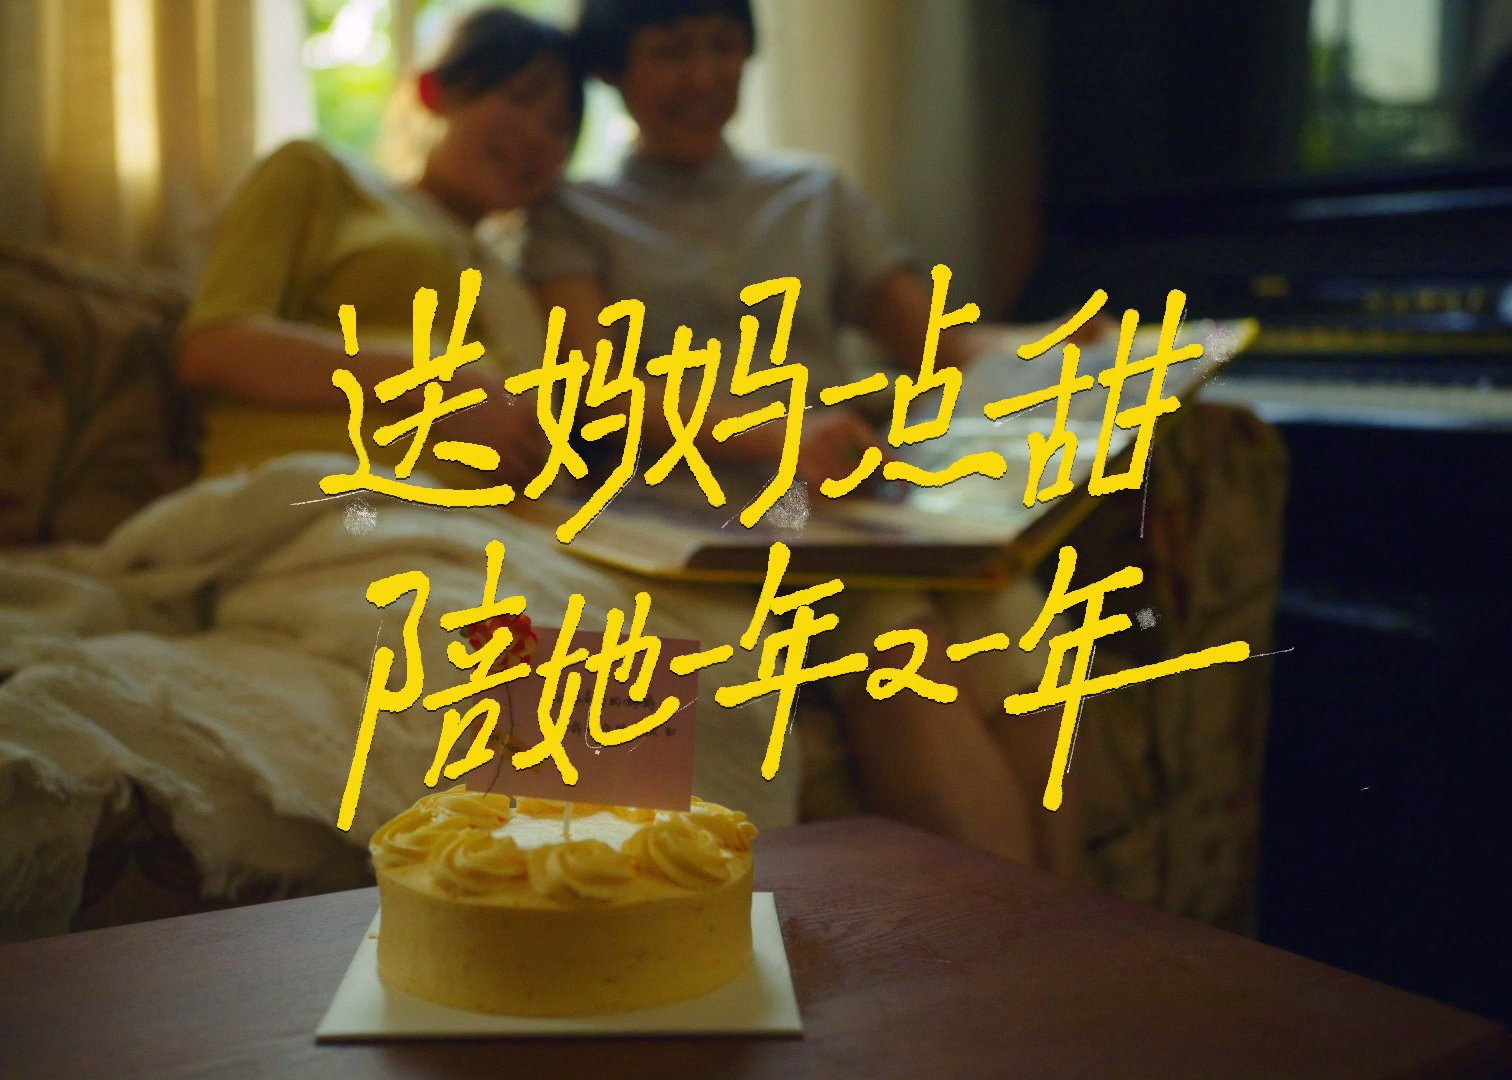 一条由蛋糕上的祝福语组成的母亲节影片